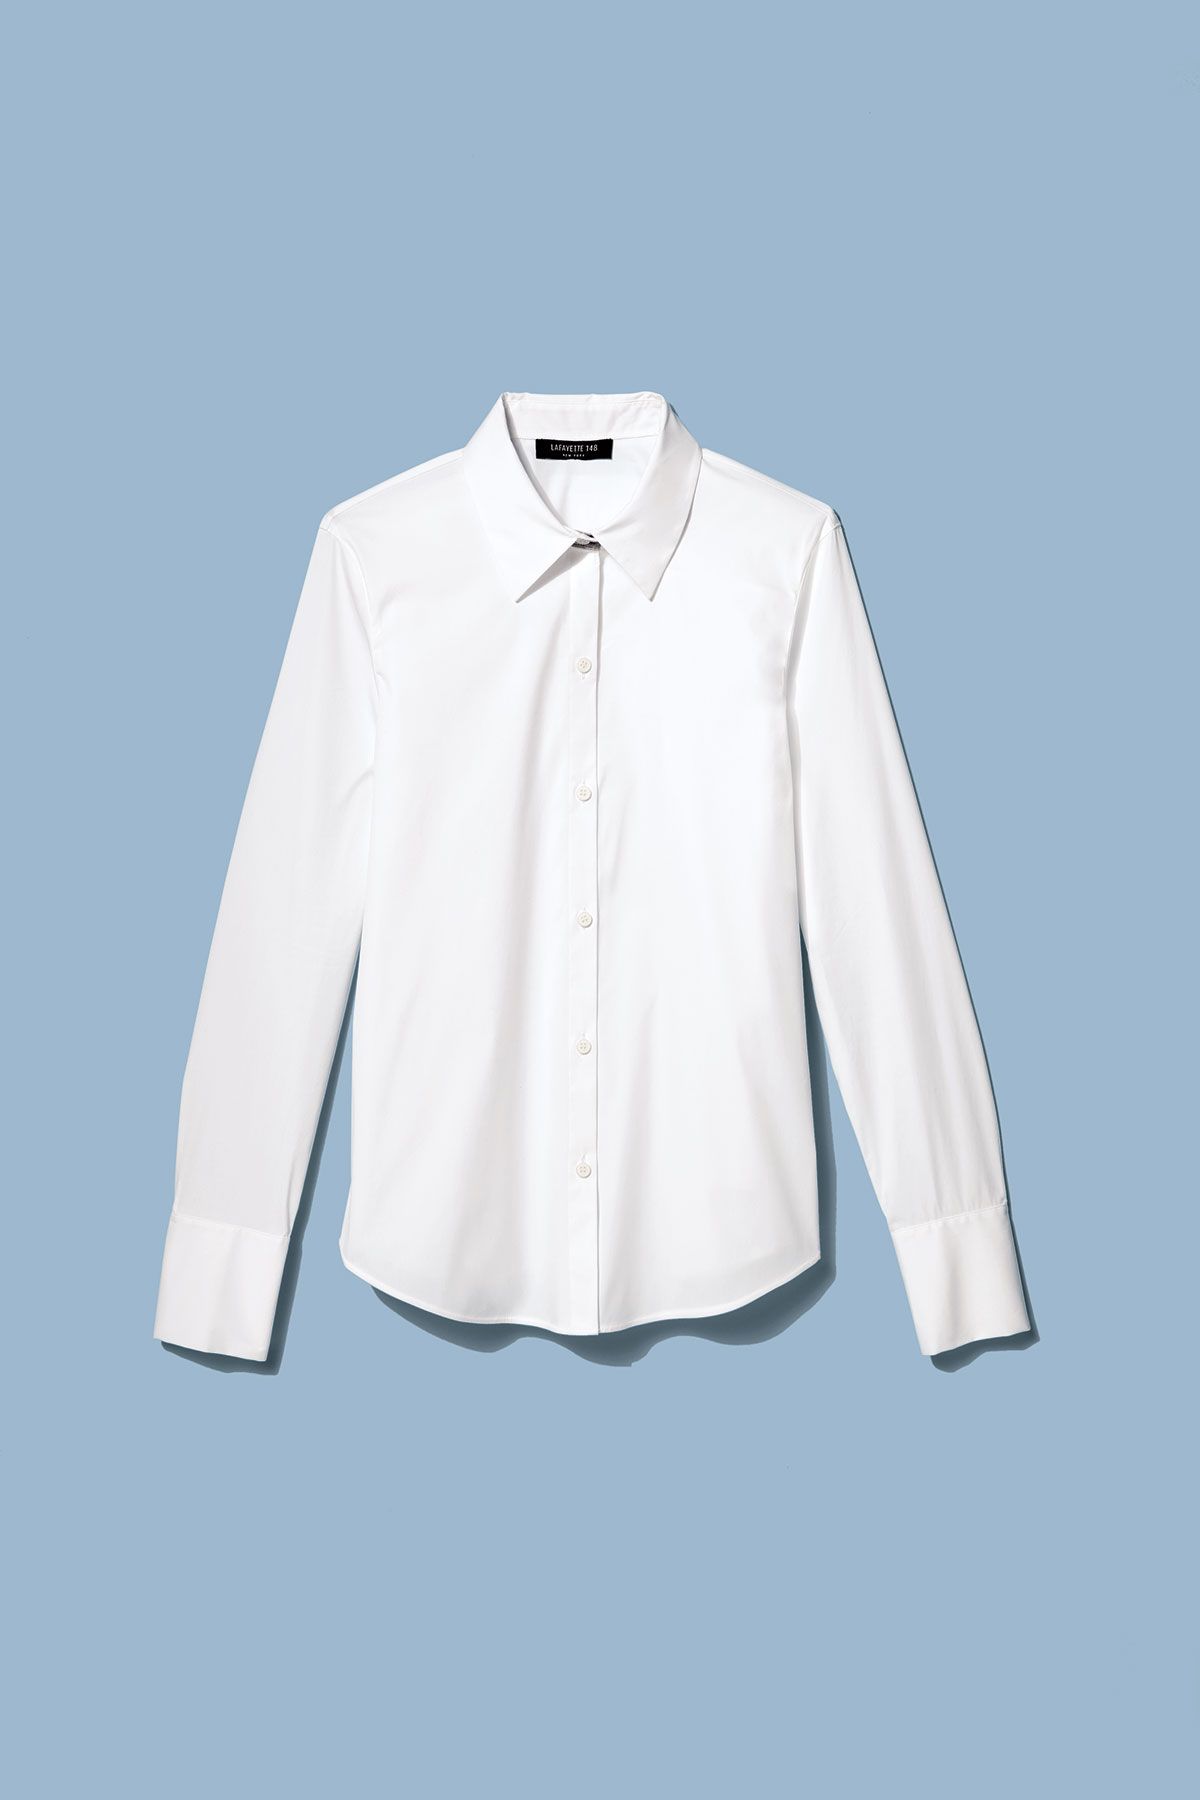 10 საუკეთესო თეთრი პერანგი, რომელიც ჩვენ ოდესმე გვეცვა